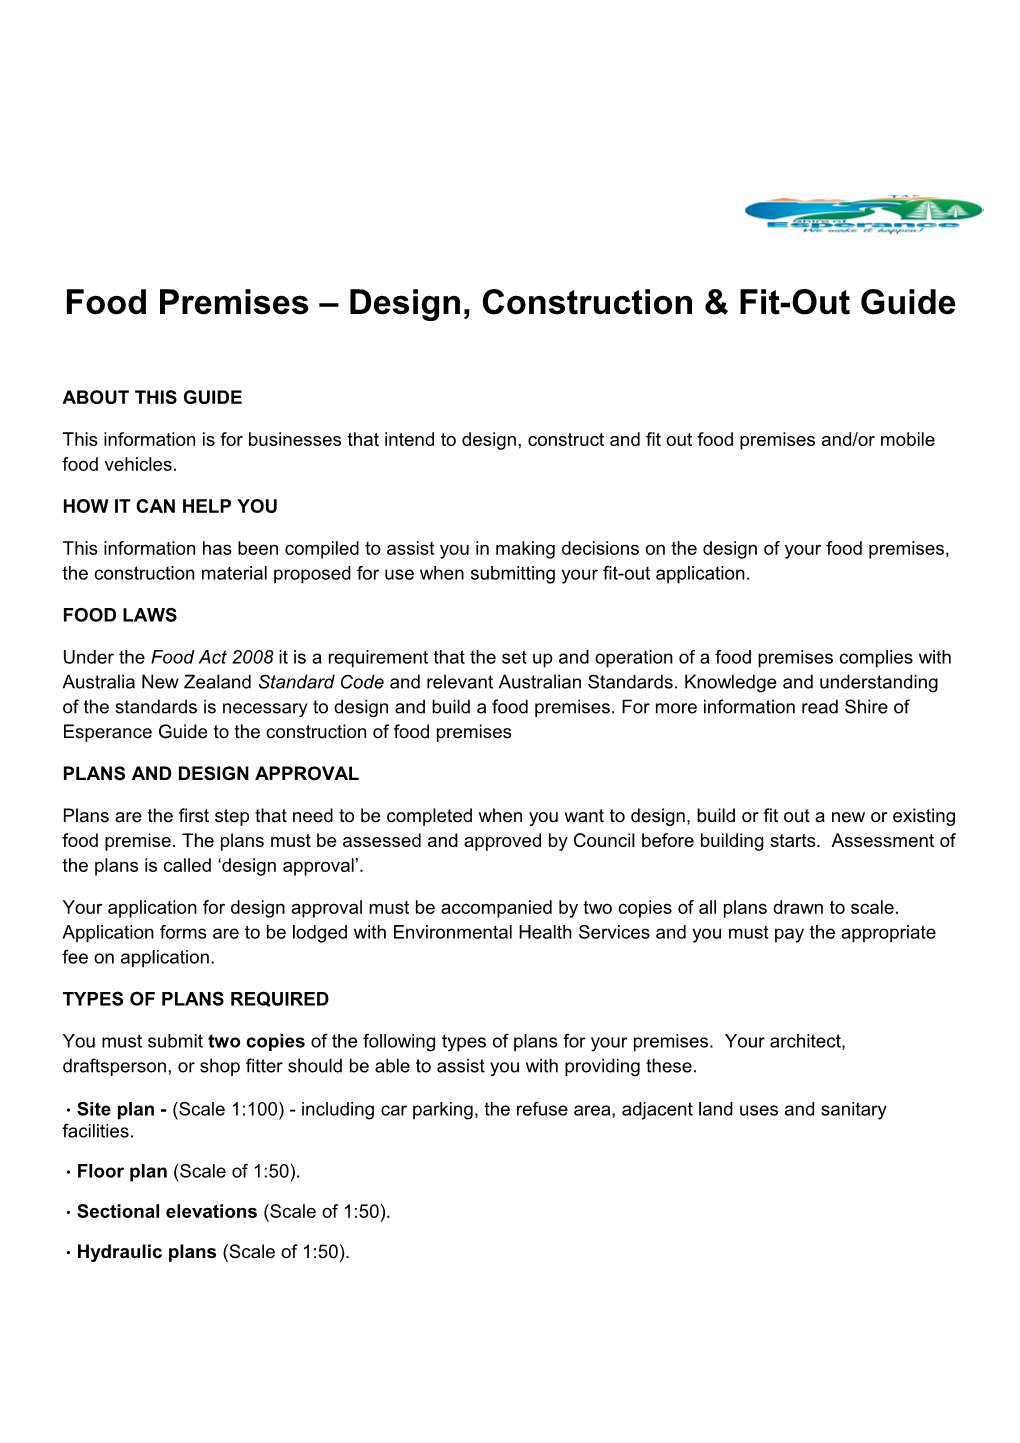 Food Premises Design, Construction & Fit-Out Guide